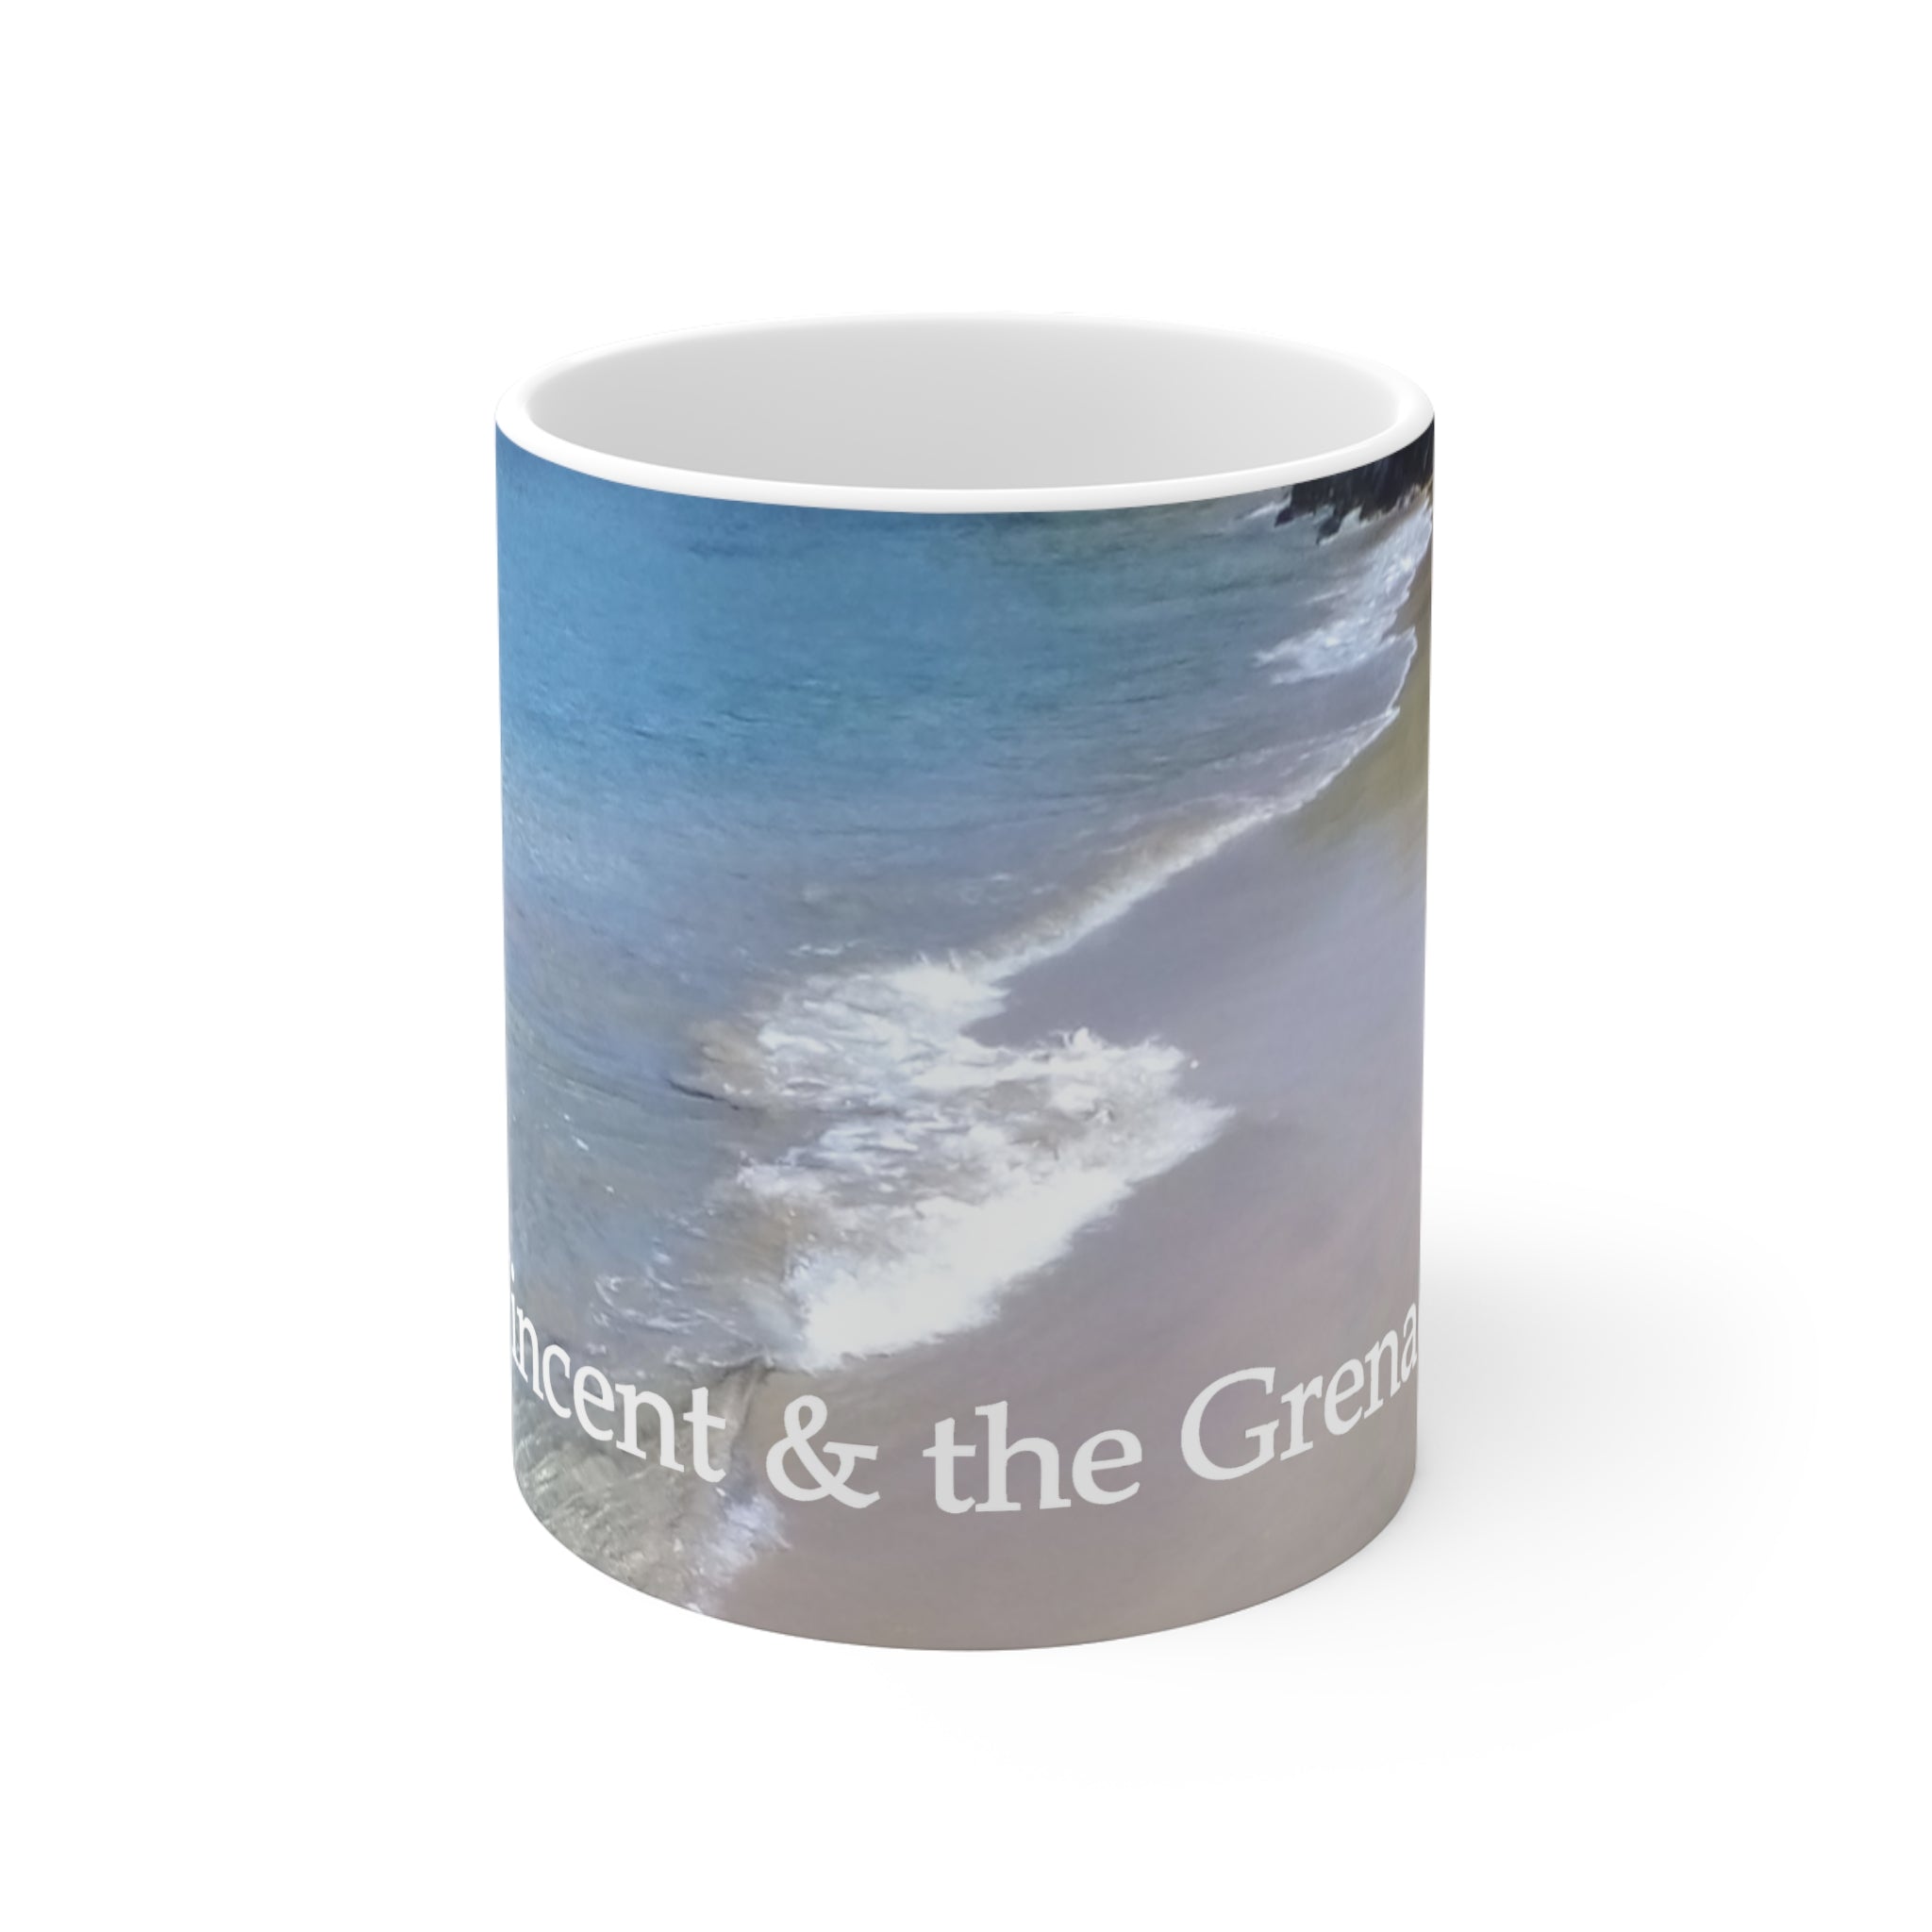 11oz souvenir ceramic mug featuring a picture of a beach in Mayreau